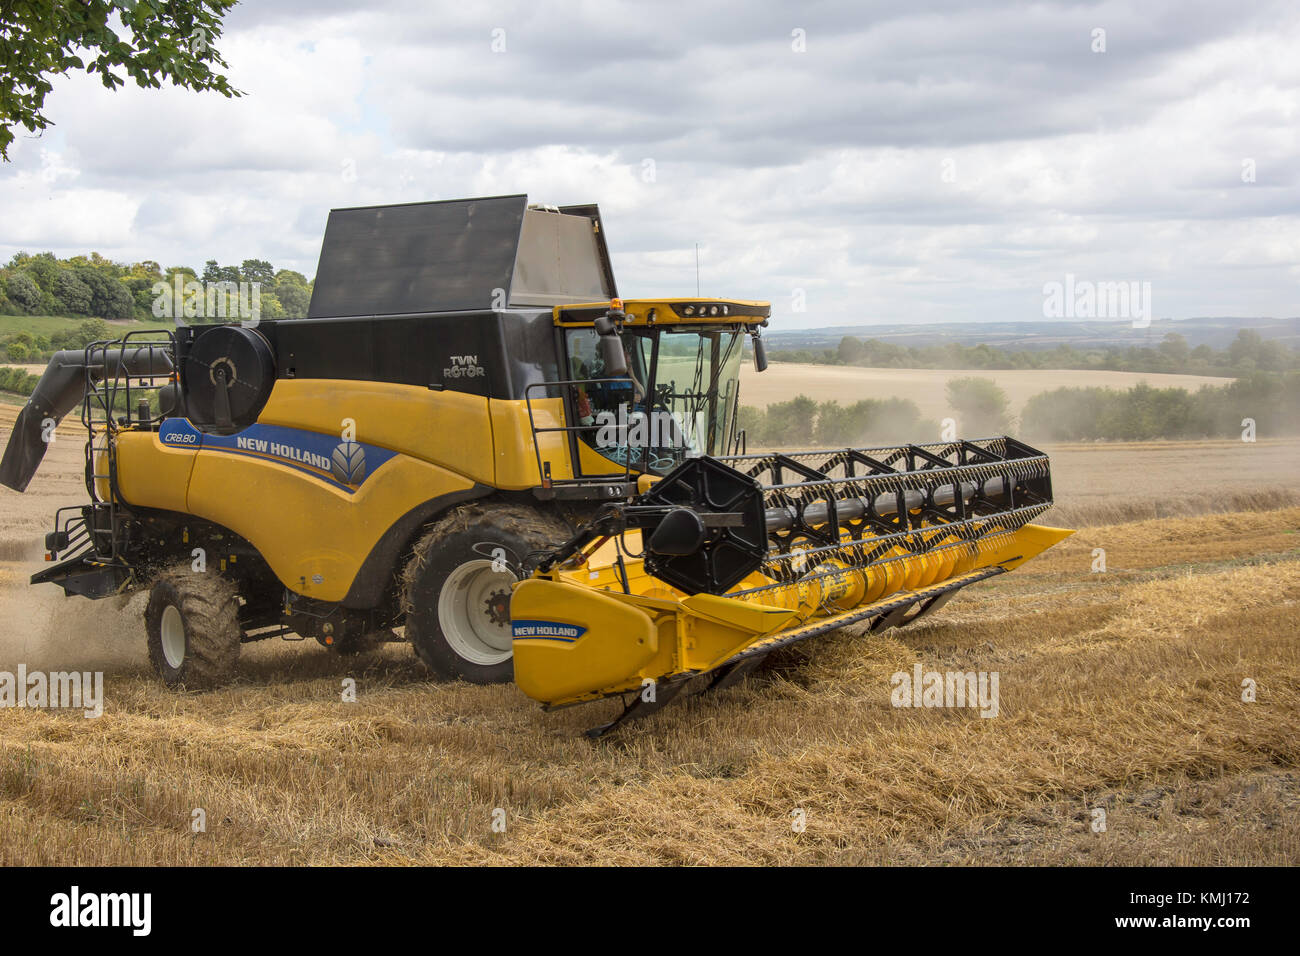 Rotor Double New Holland moissonneuse-batteuse, la récolte du blé près de Didcot, Oxfordshire, Angleterre, Royaume-Uni Banque D'Images